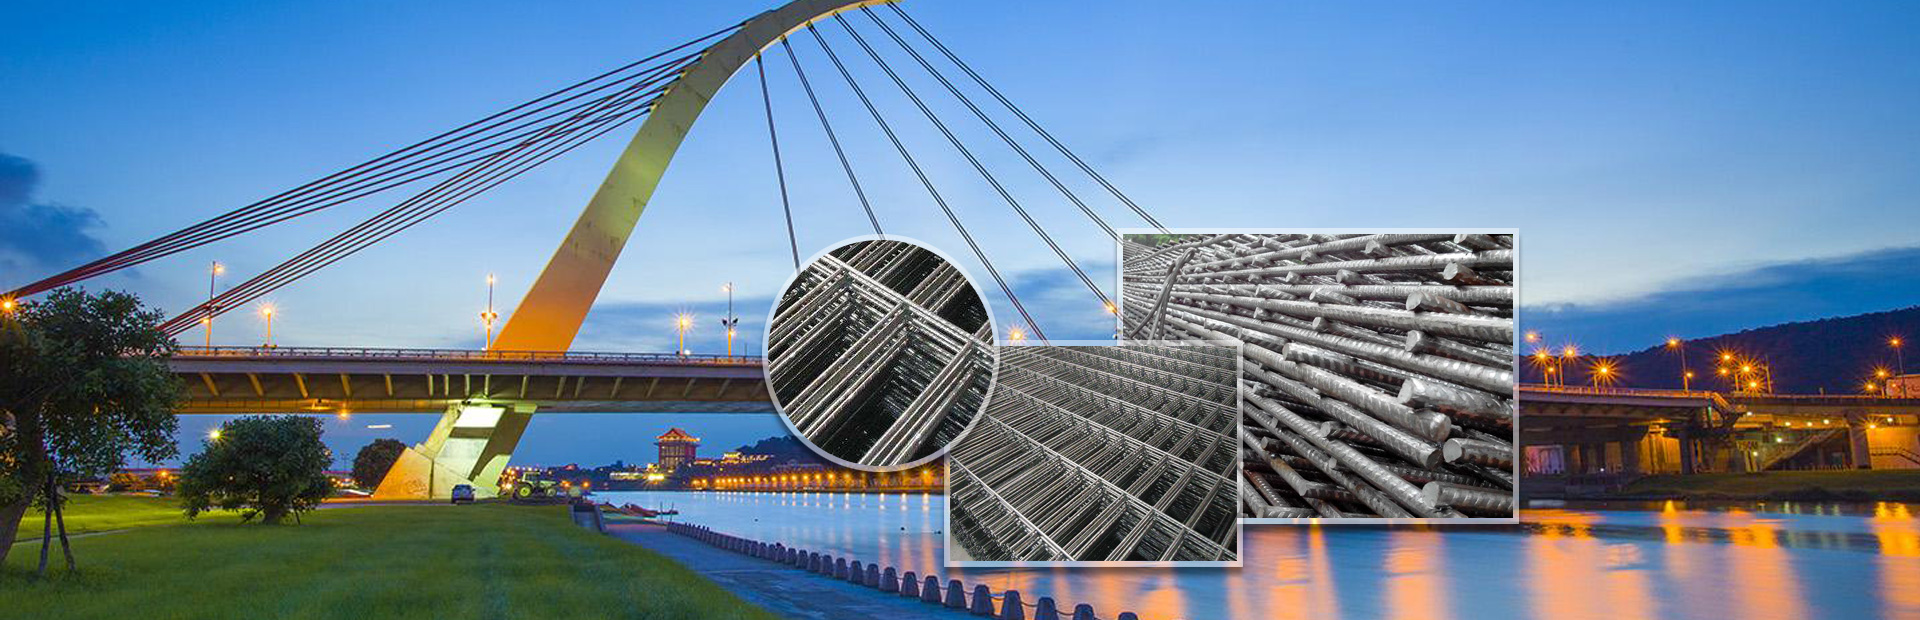 钢筋焊接网,CRB550钢筋,CRB600H高延钢筋,河北钢筋焊接网,雄安新区钢筋焊接网,河北CRB550钢筋